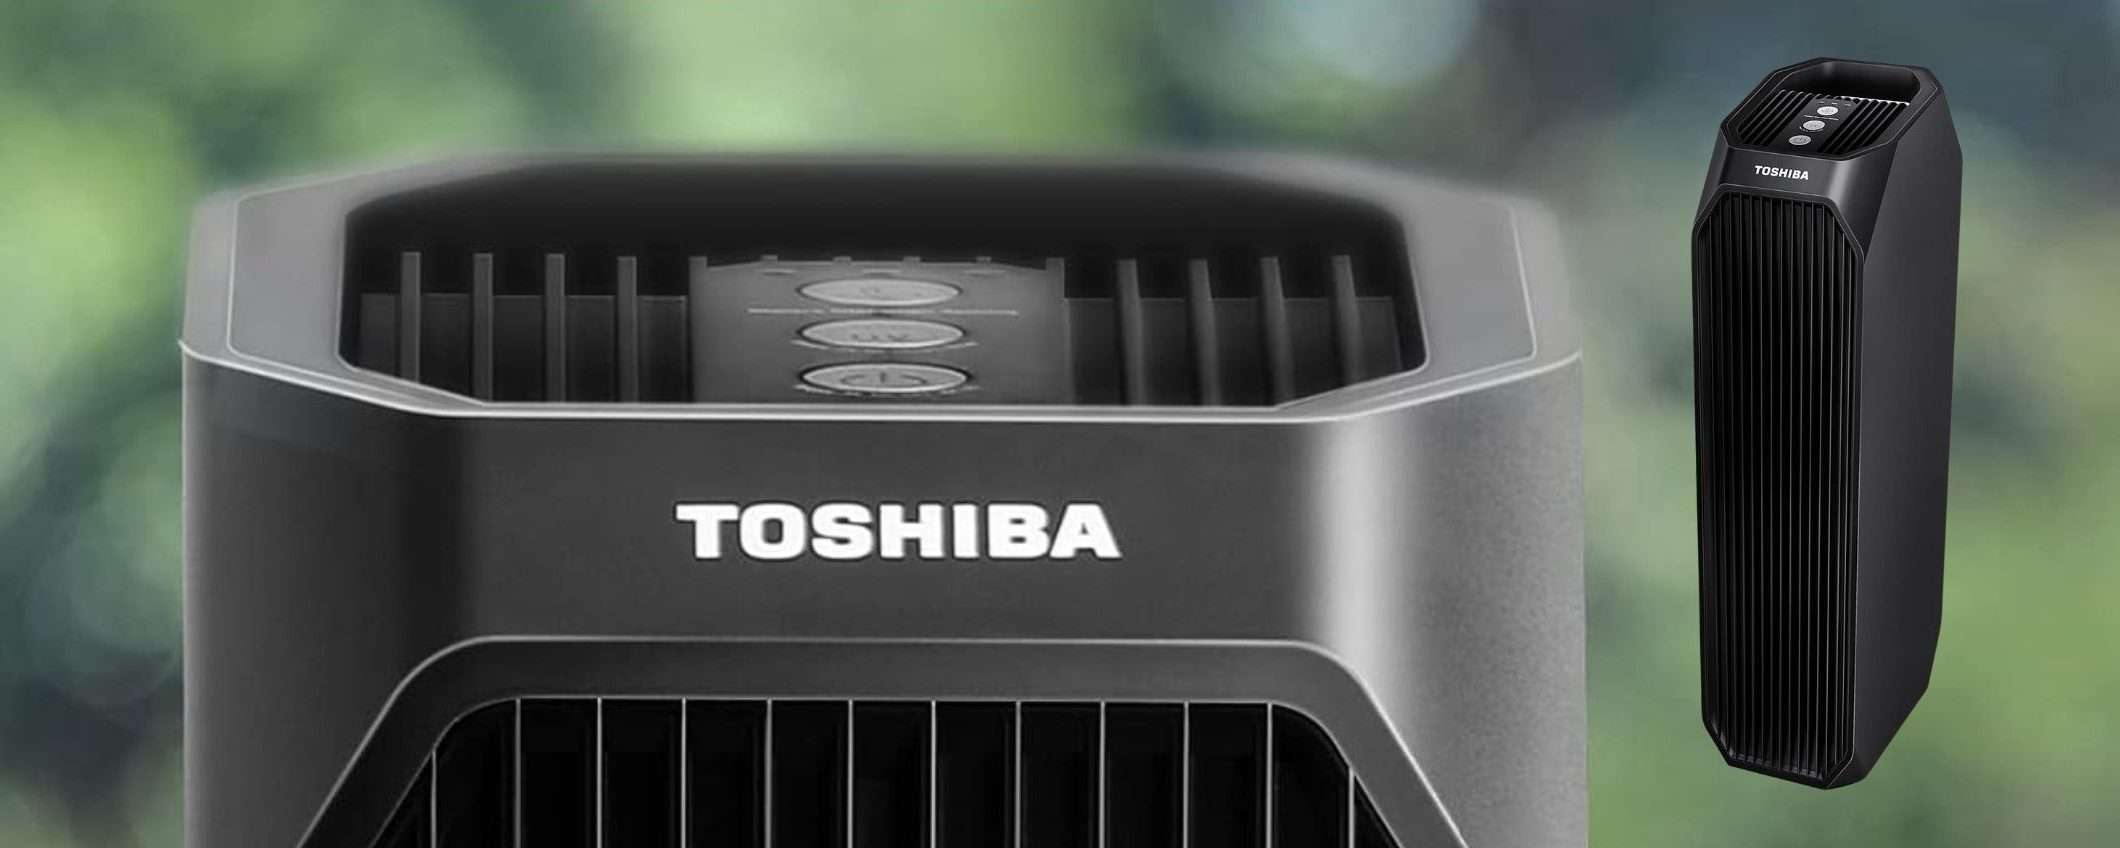 Toshiba, purificatore d'aria a 54€ su Amazon: prezzo SHOCK, sconto del 53%